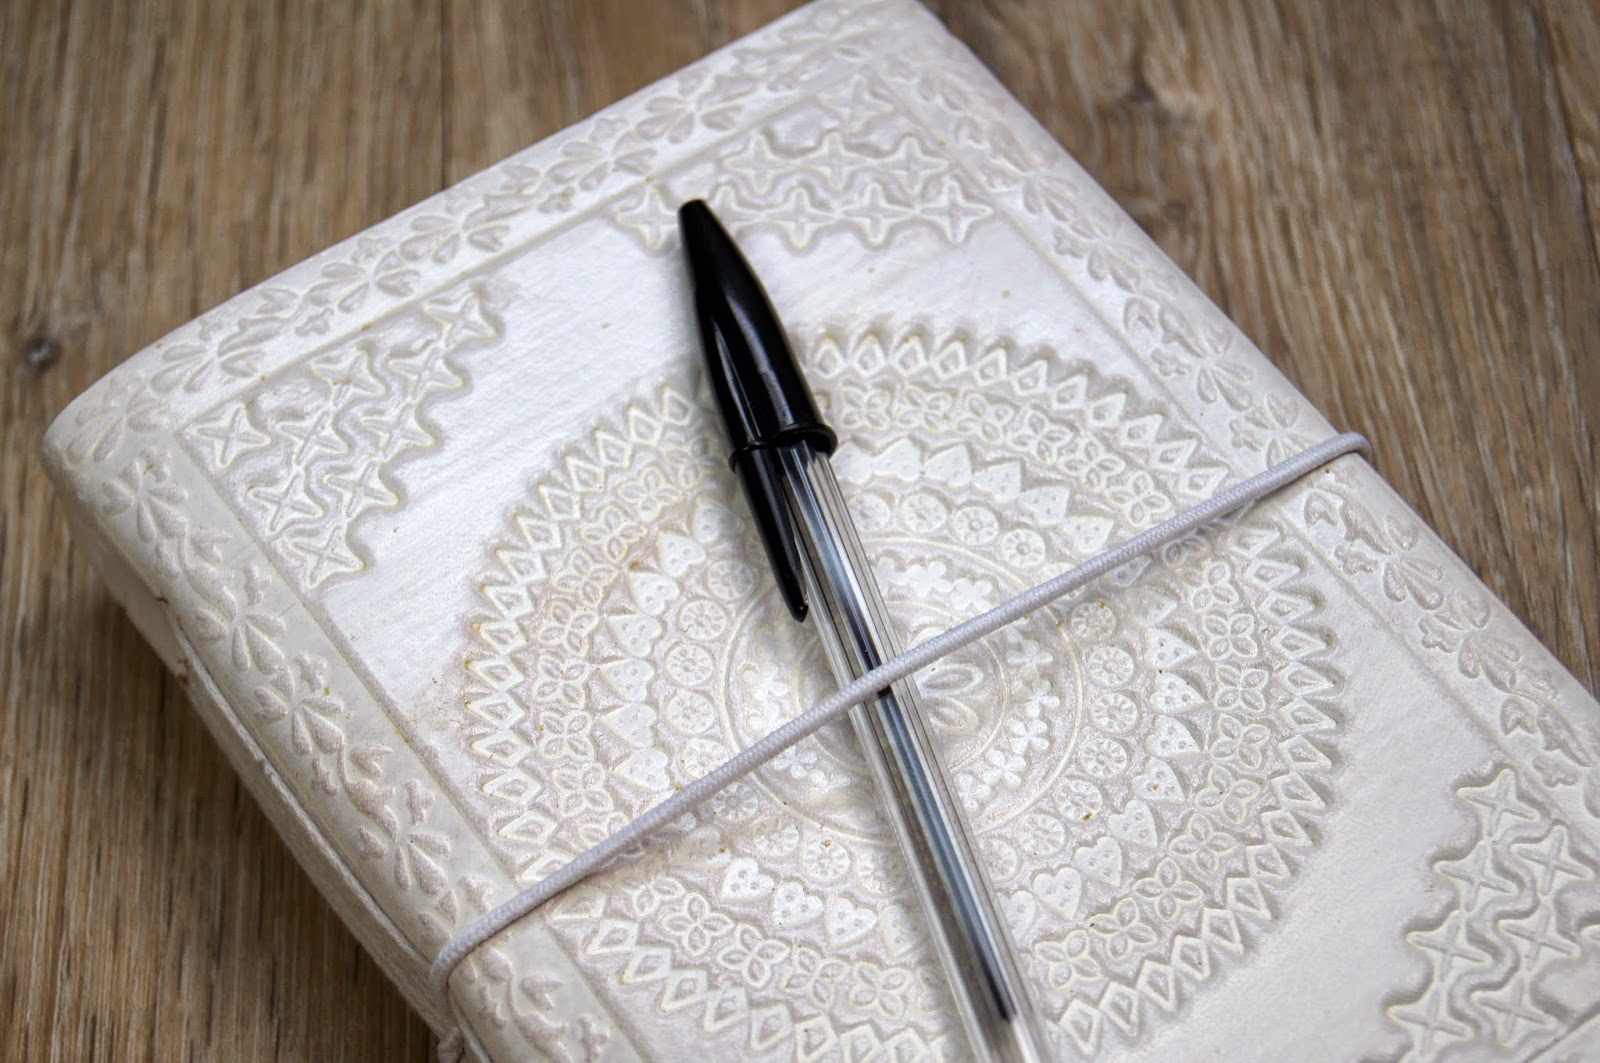 cute notebook and pen handbag essentials